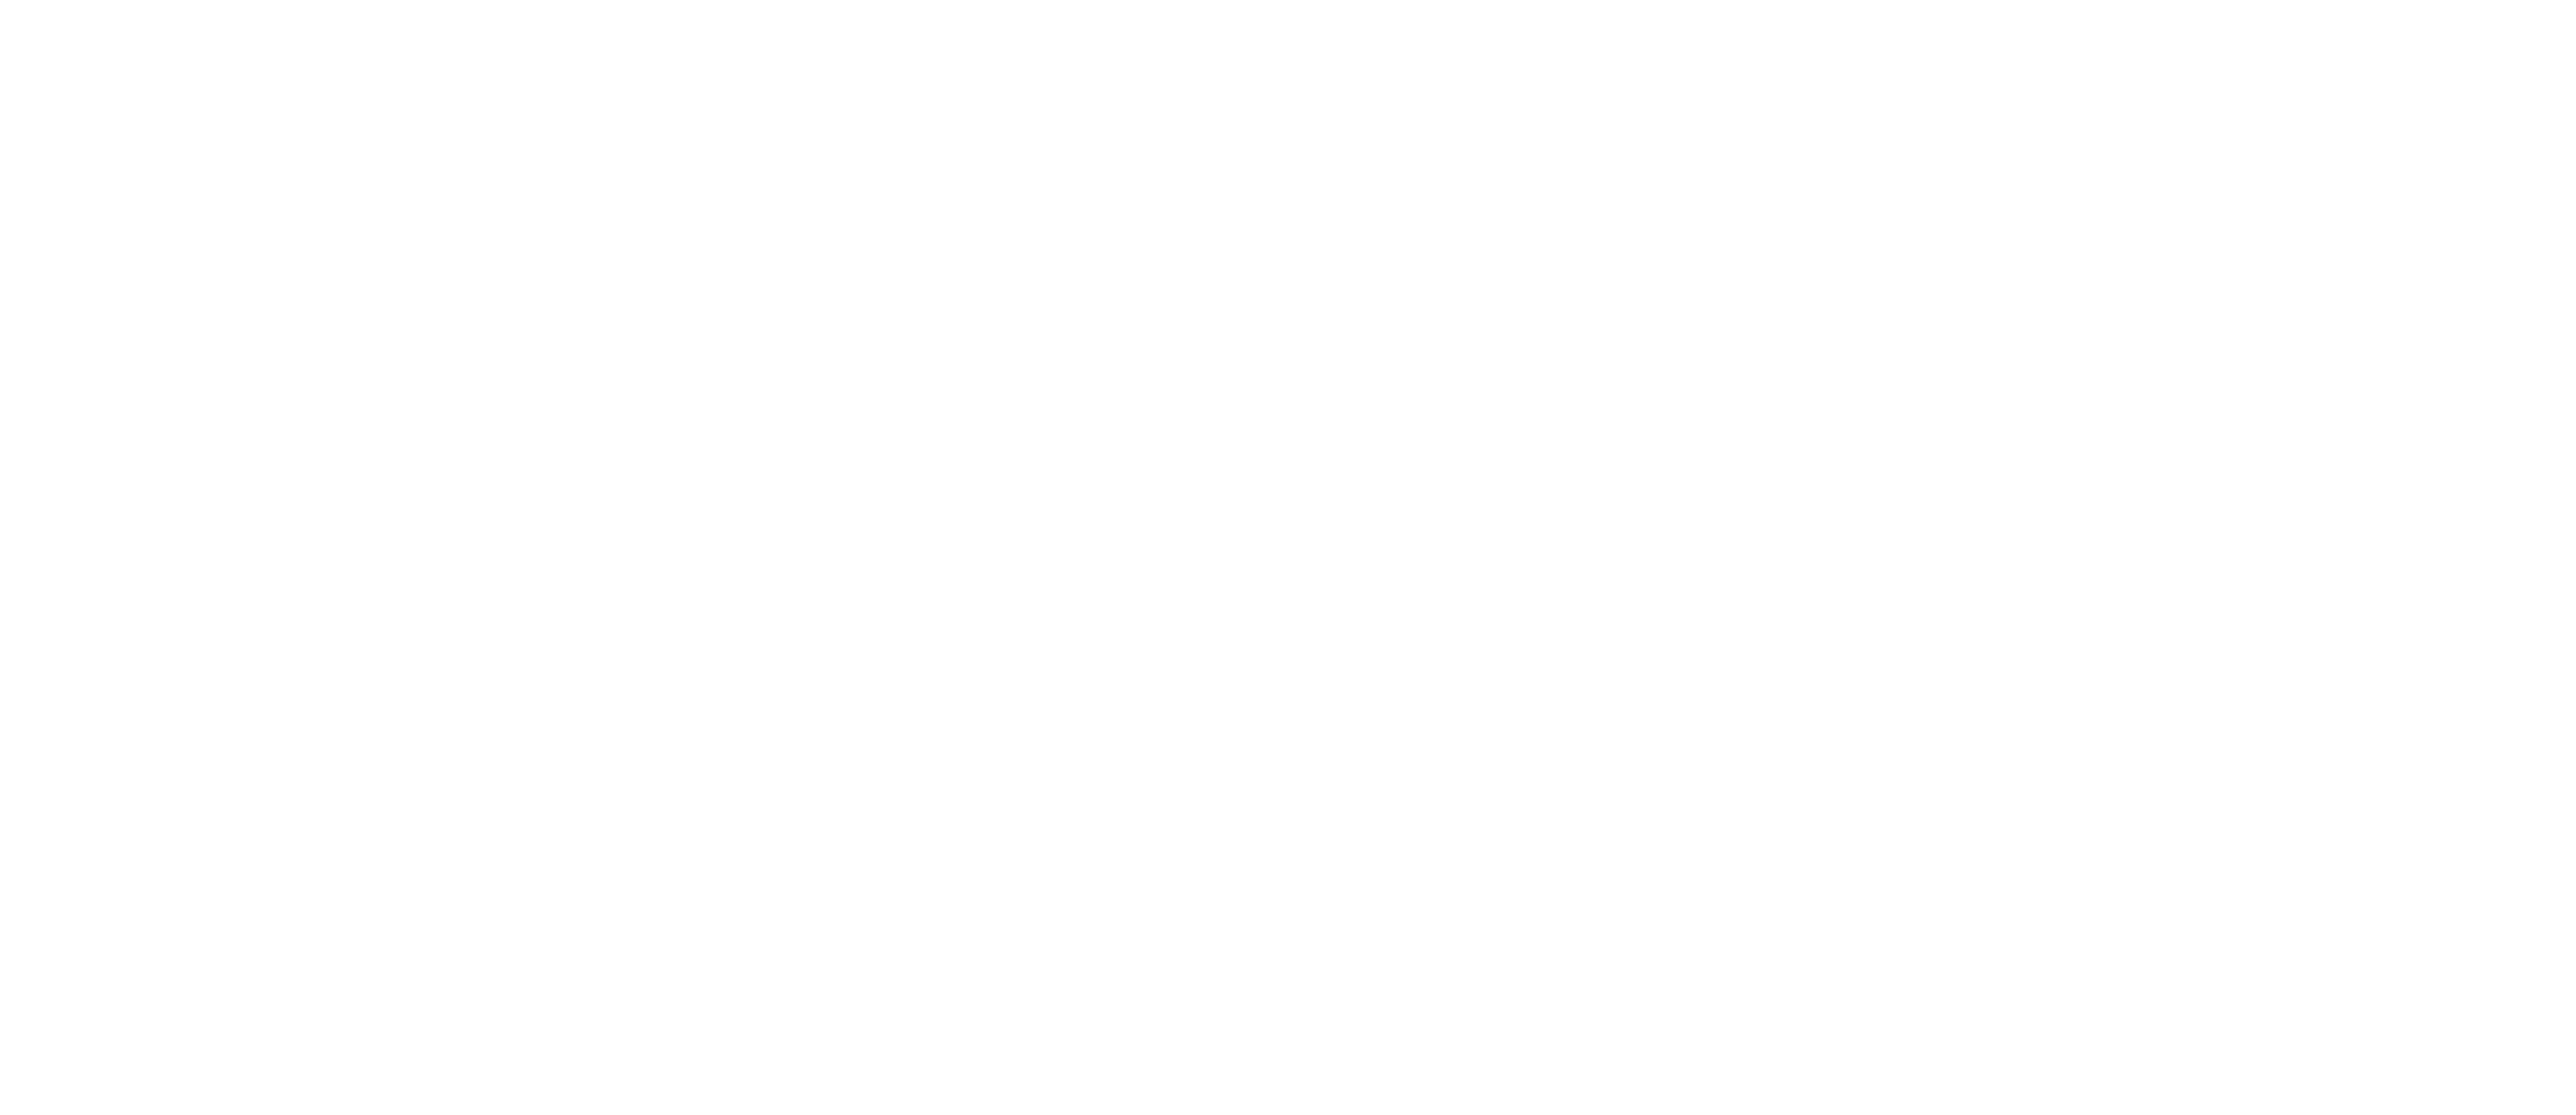 tom hitchen